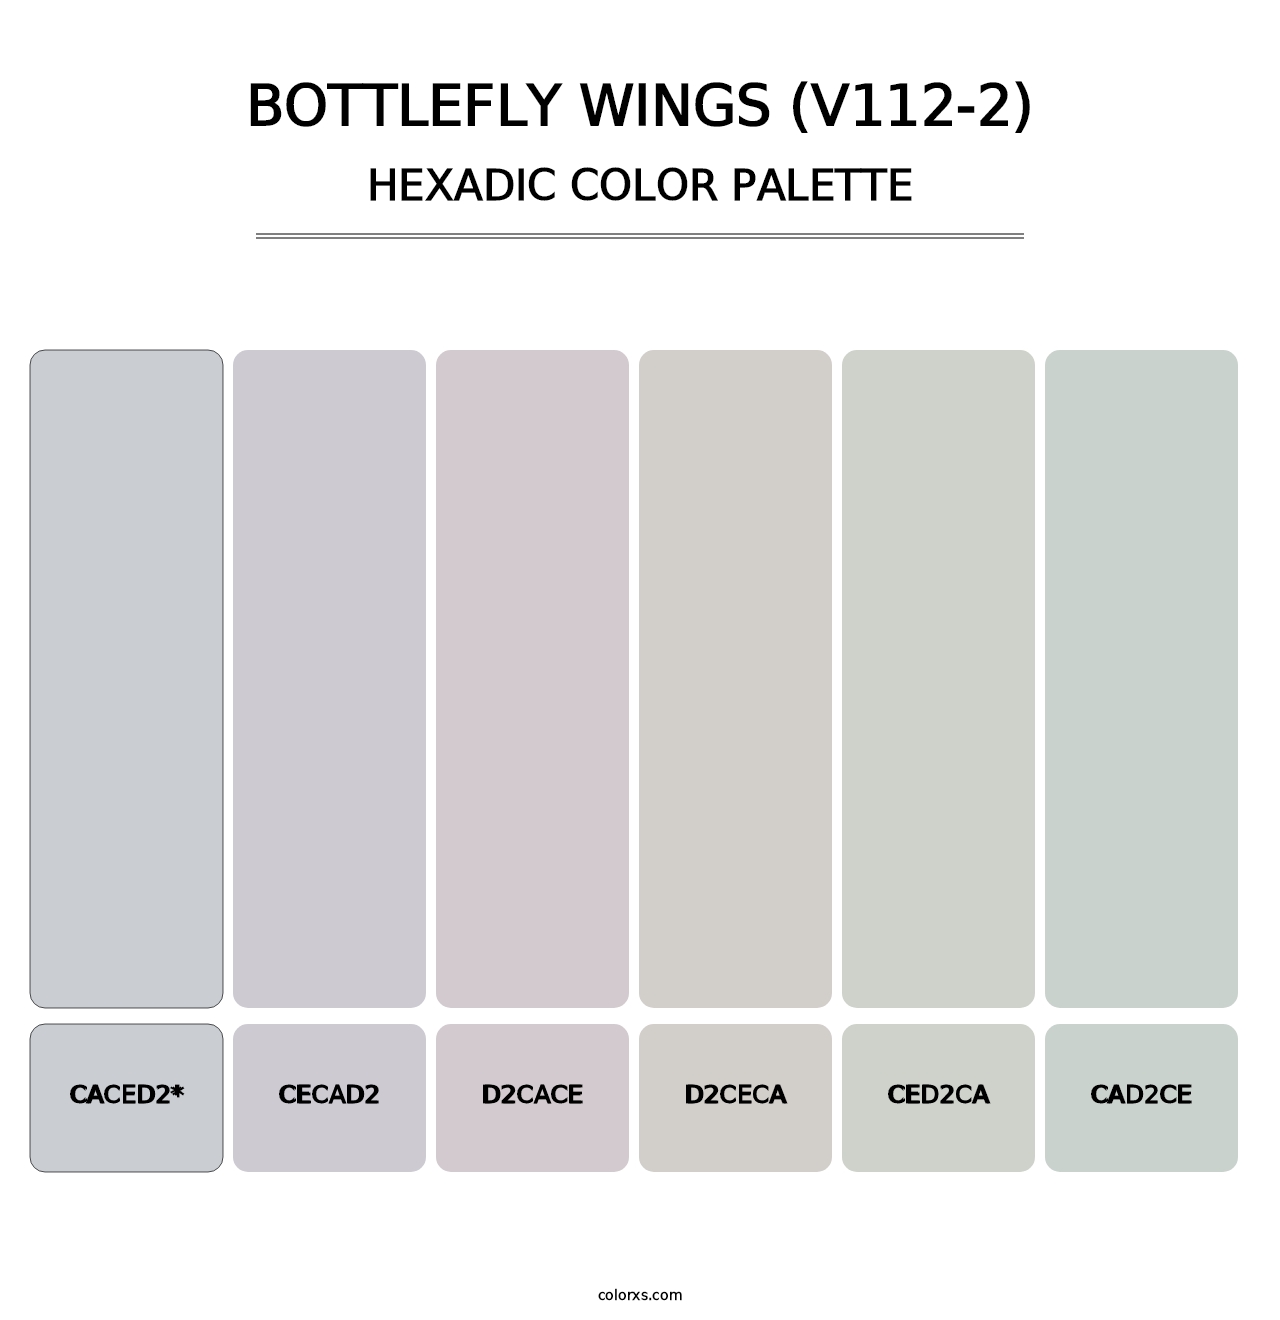 Bottlefly Wings (V112-2) - Hexadic Color Palette